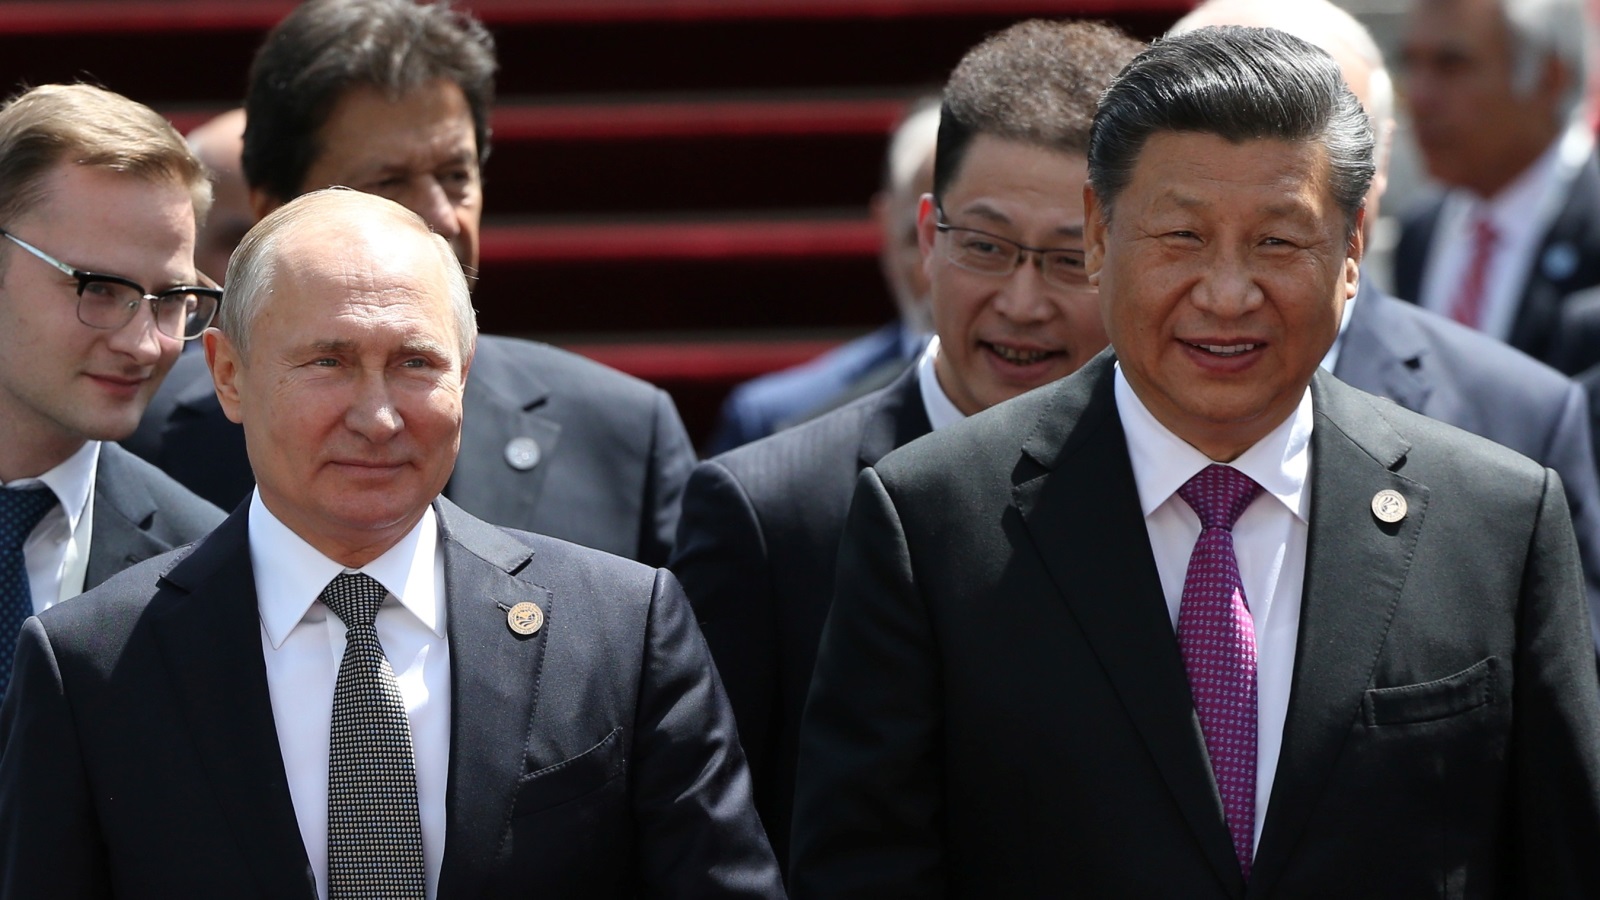 تخشى واشنطن من أن الصين إذا انضمت إلى روسيا فإنها يمكن أن تُغيِّر التوازن العسكري في منطقة القطب الشمالي وما حولها